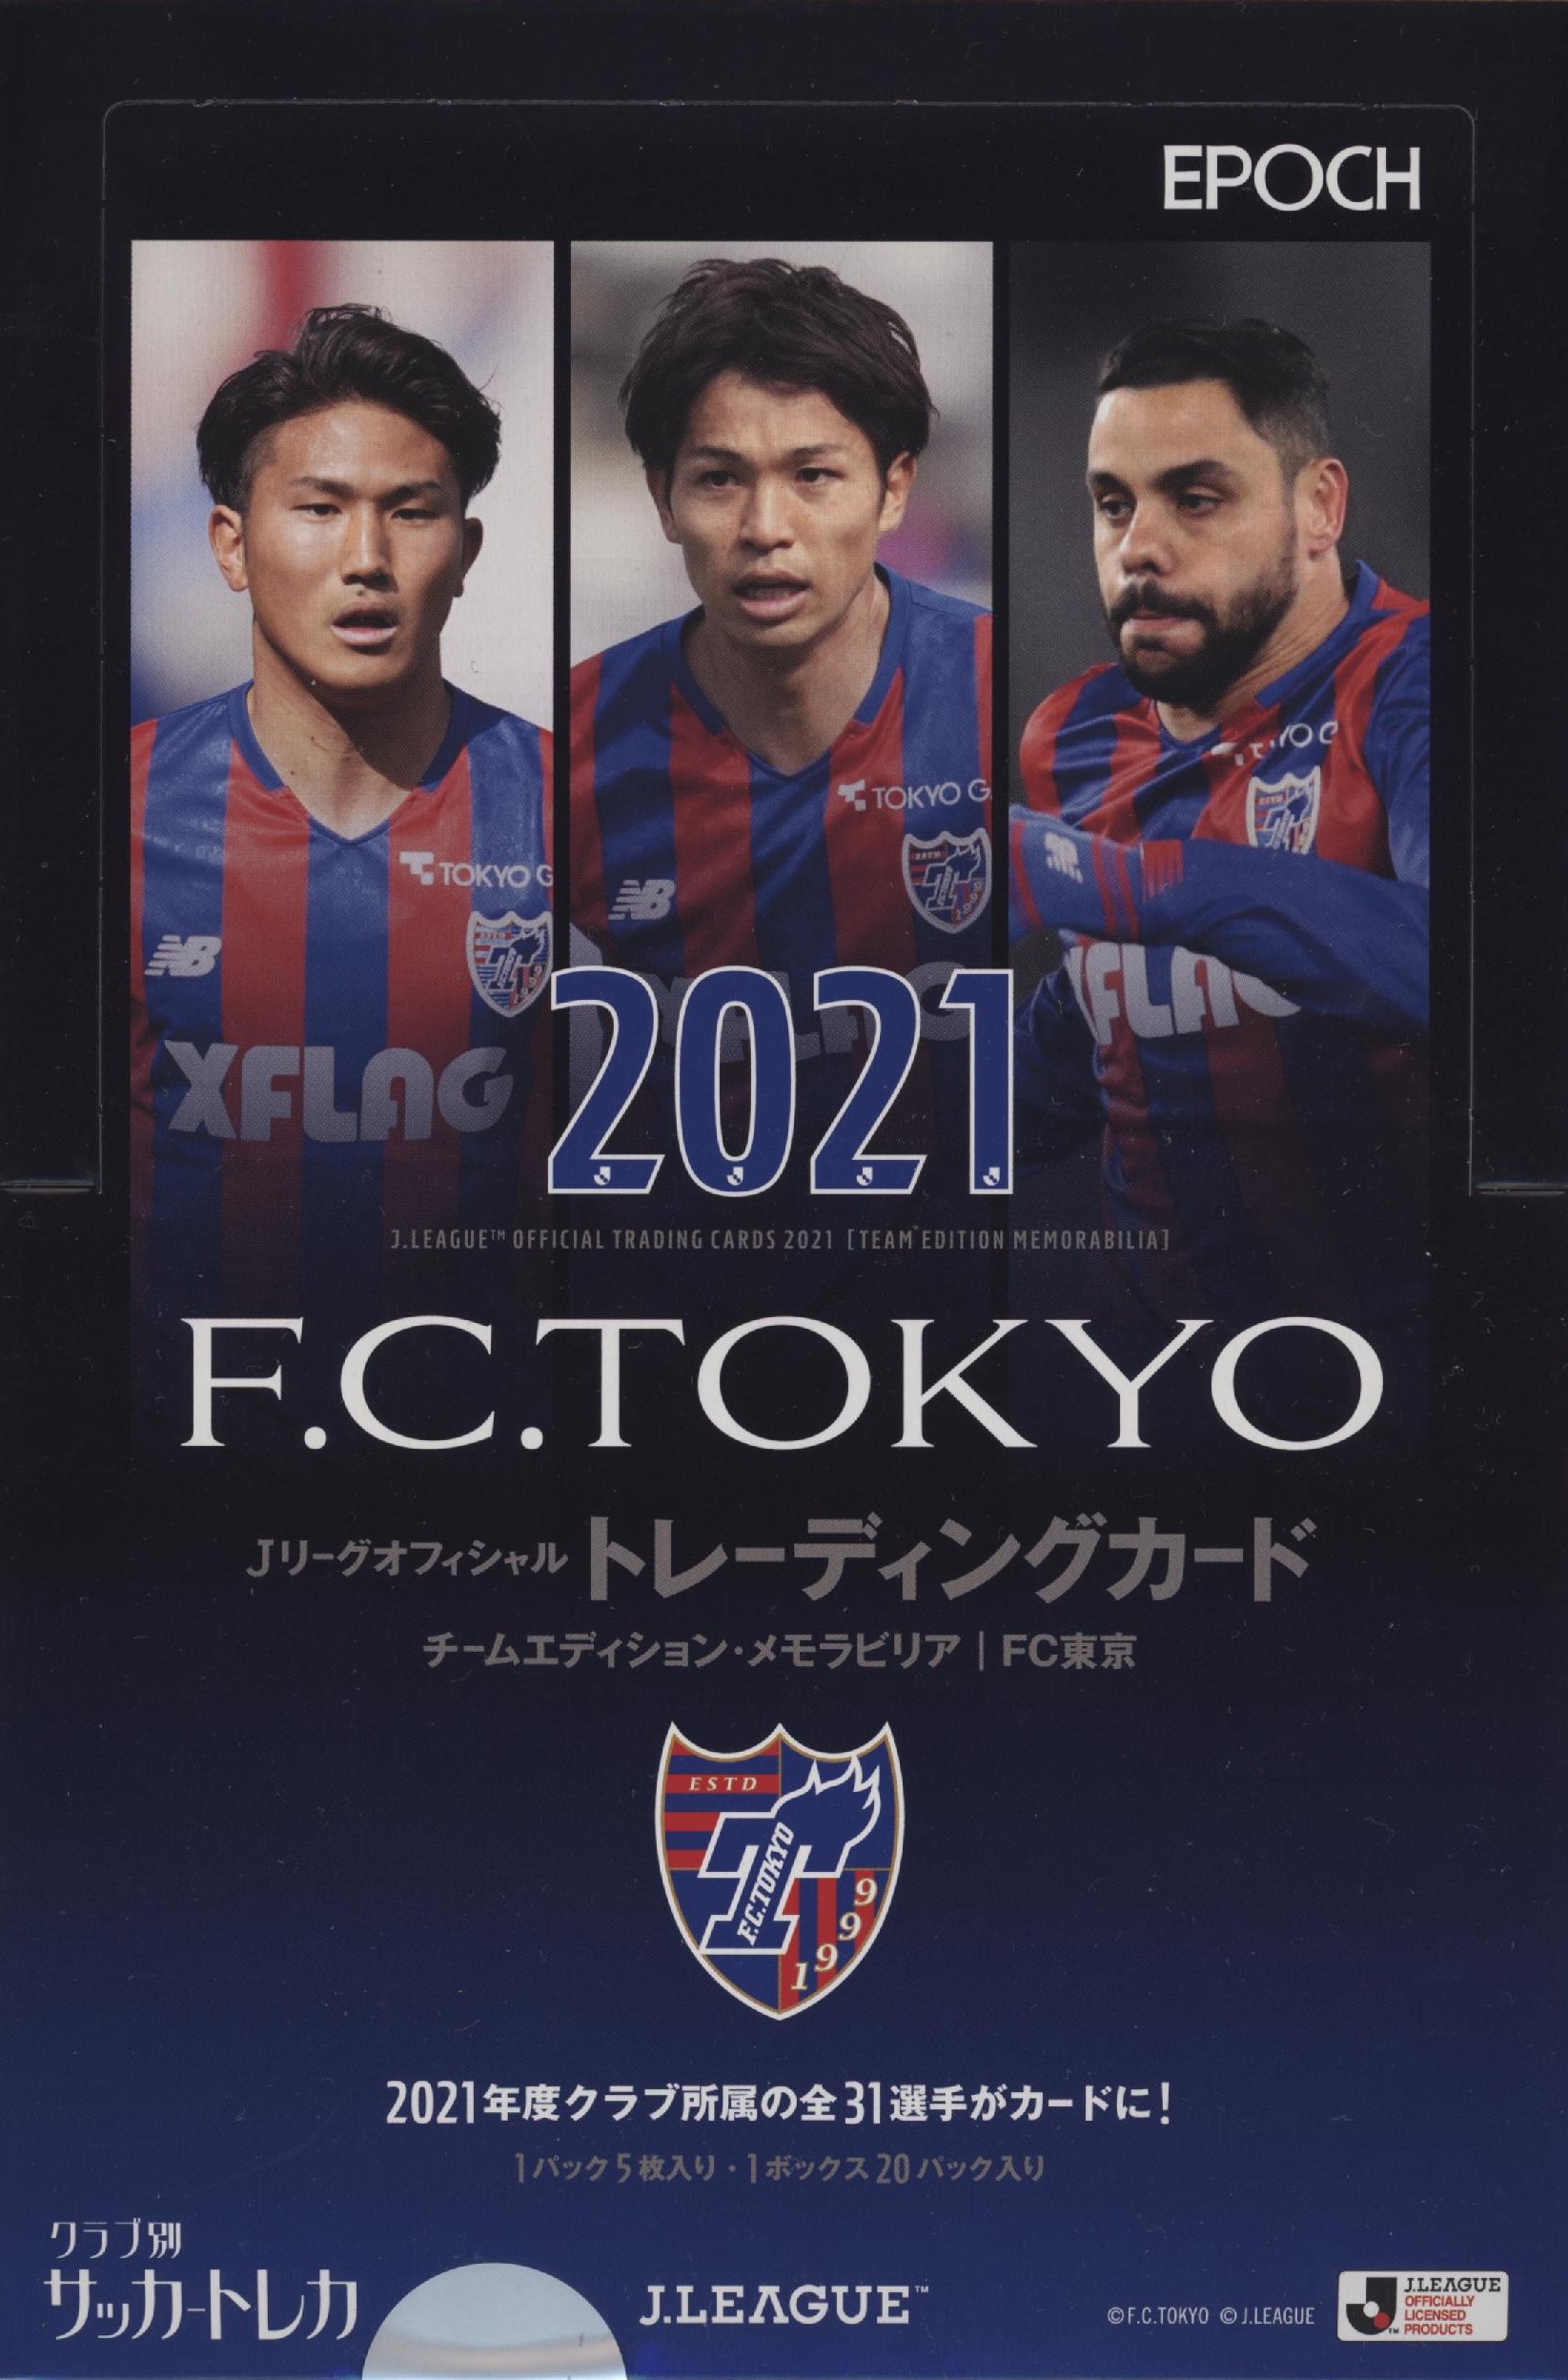 EPOCH/2021 Jリーグオフィシャルトレーディングカード 未開封BOX - その他